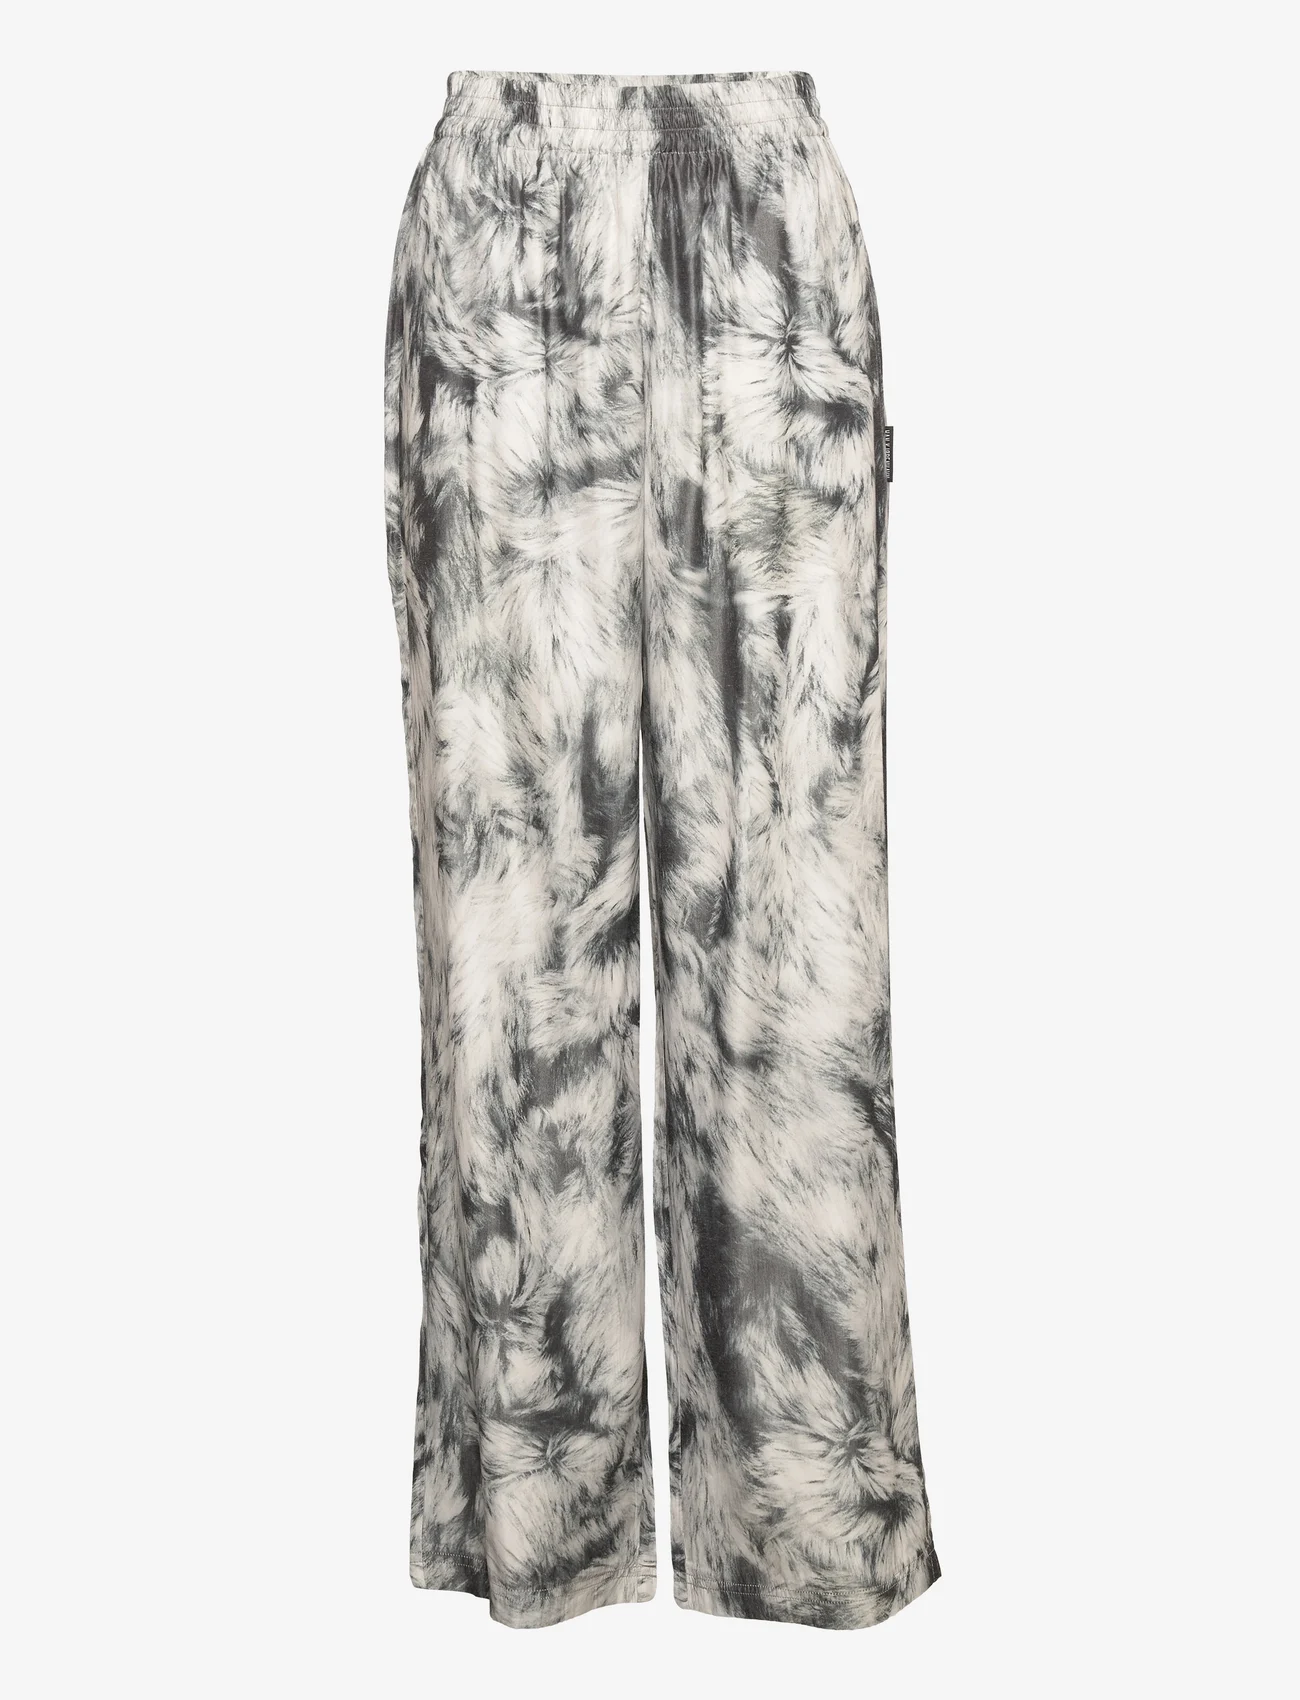 HAN Kjøbenhavn - Drape Pants - black white fur - 0